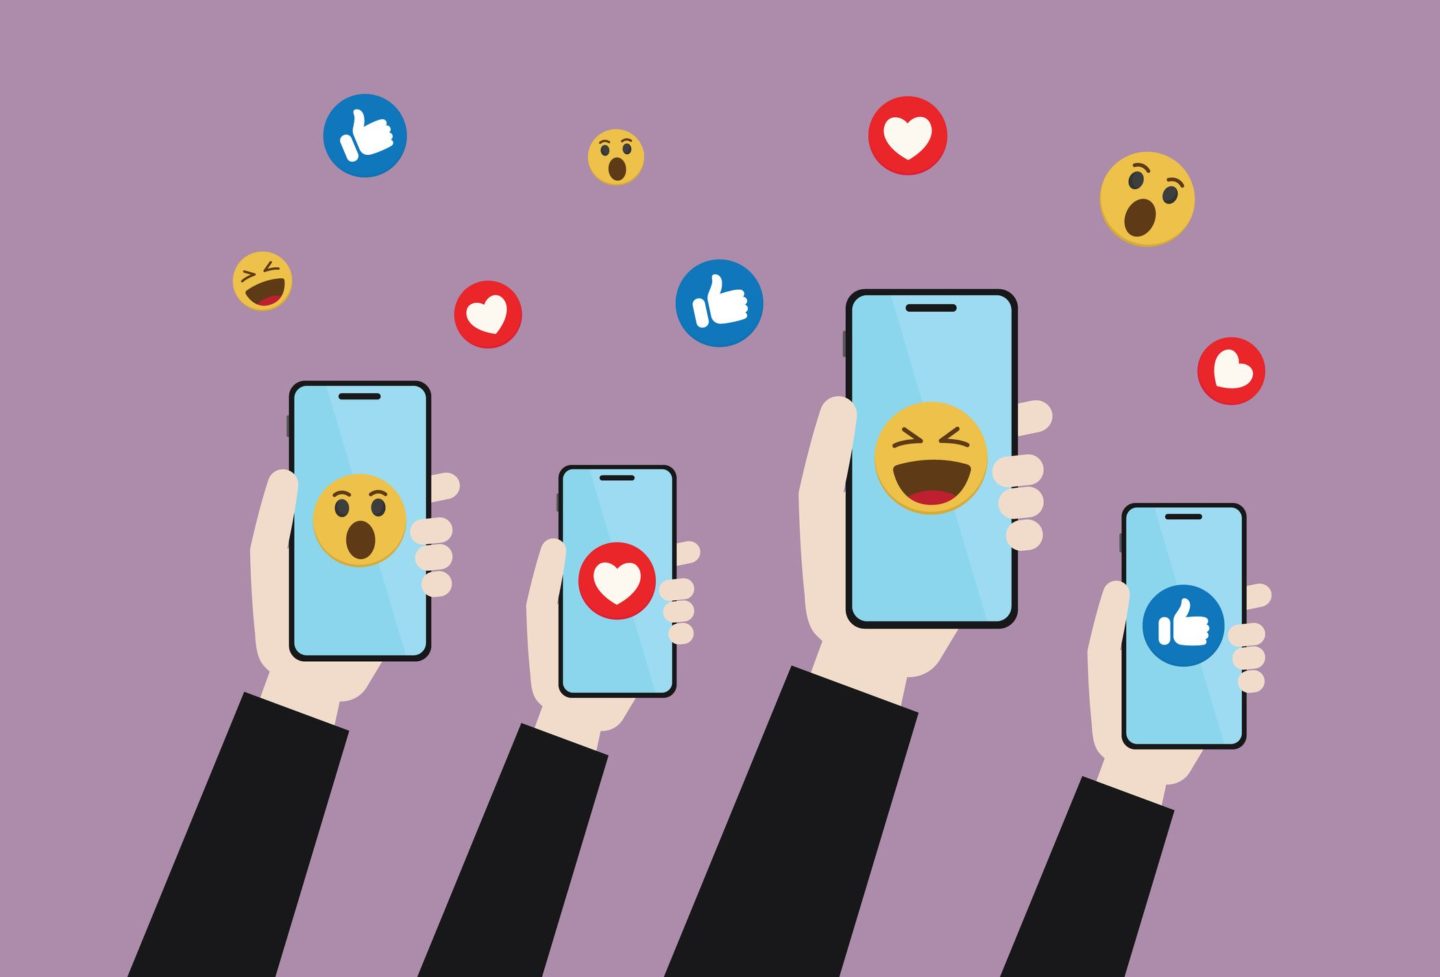 كيف تجعل وسائل التواصل الاجتماعي مكانًا أكثر إيجابية؟